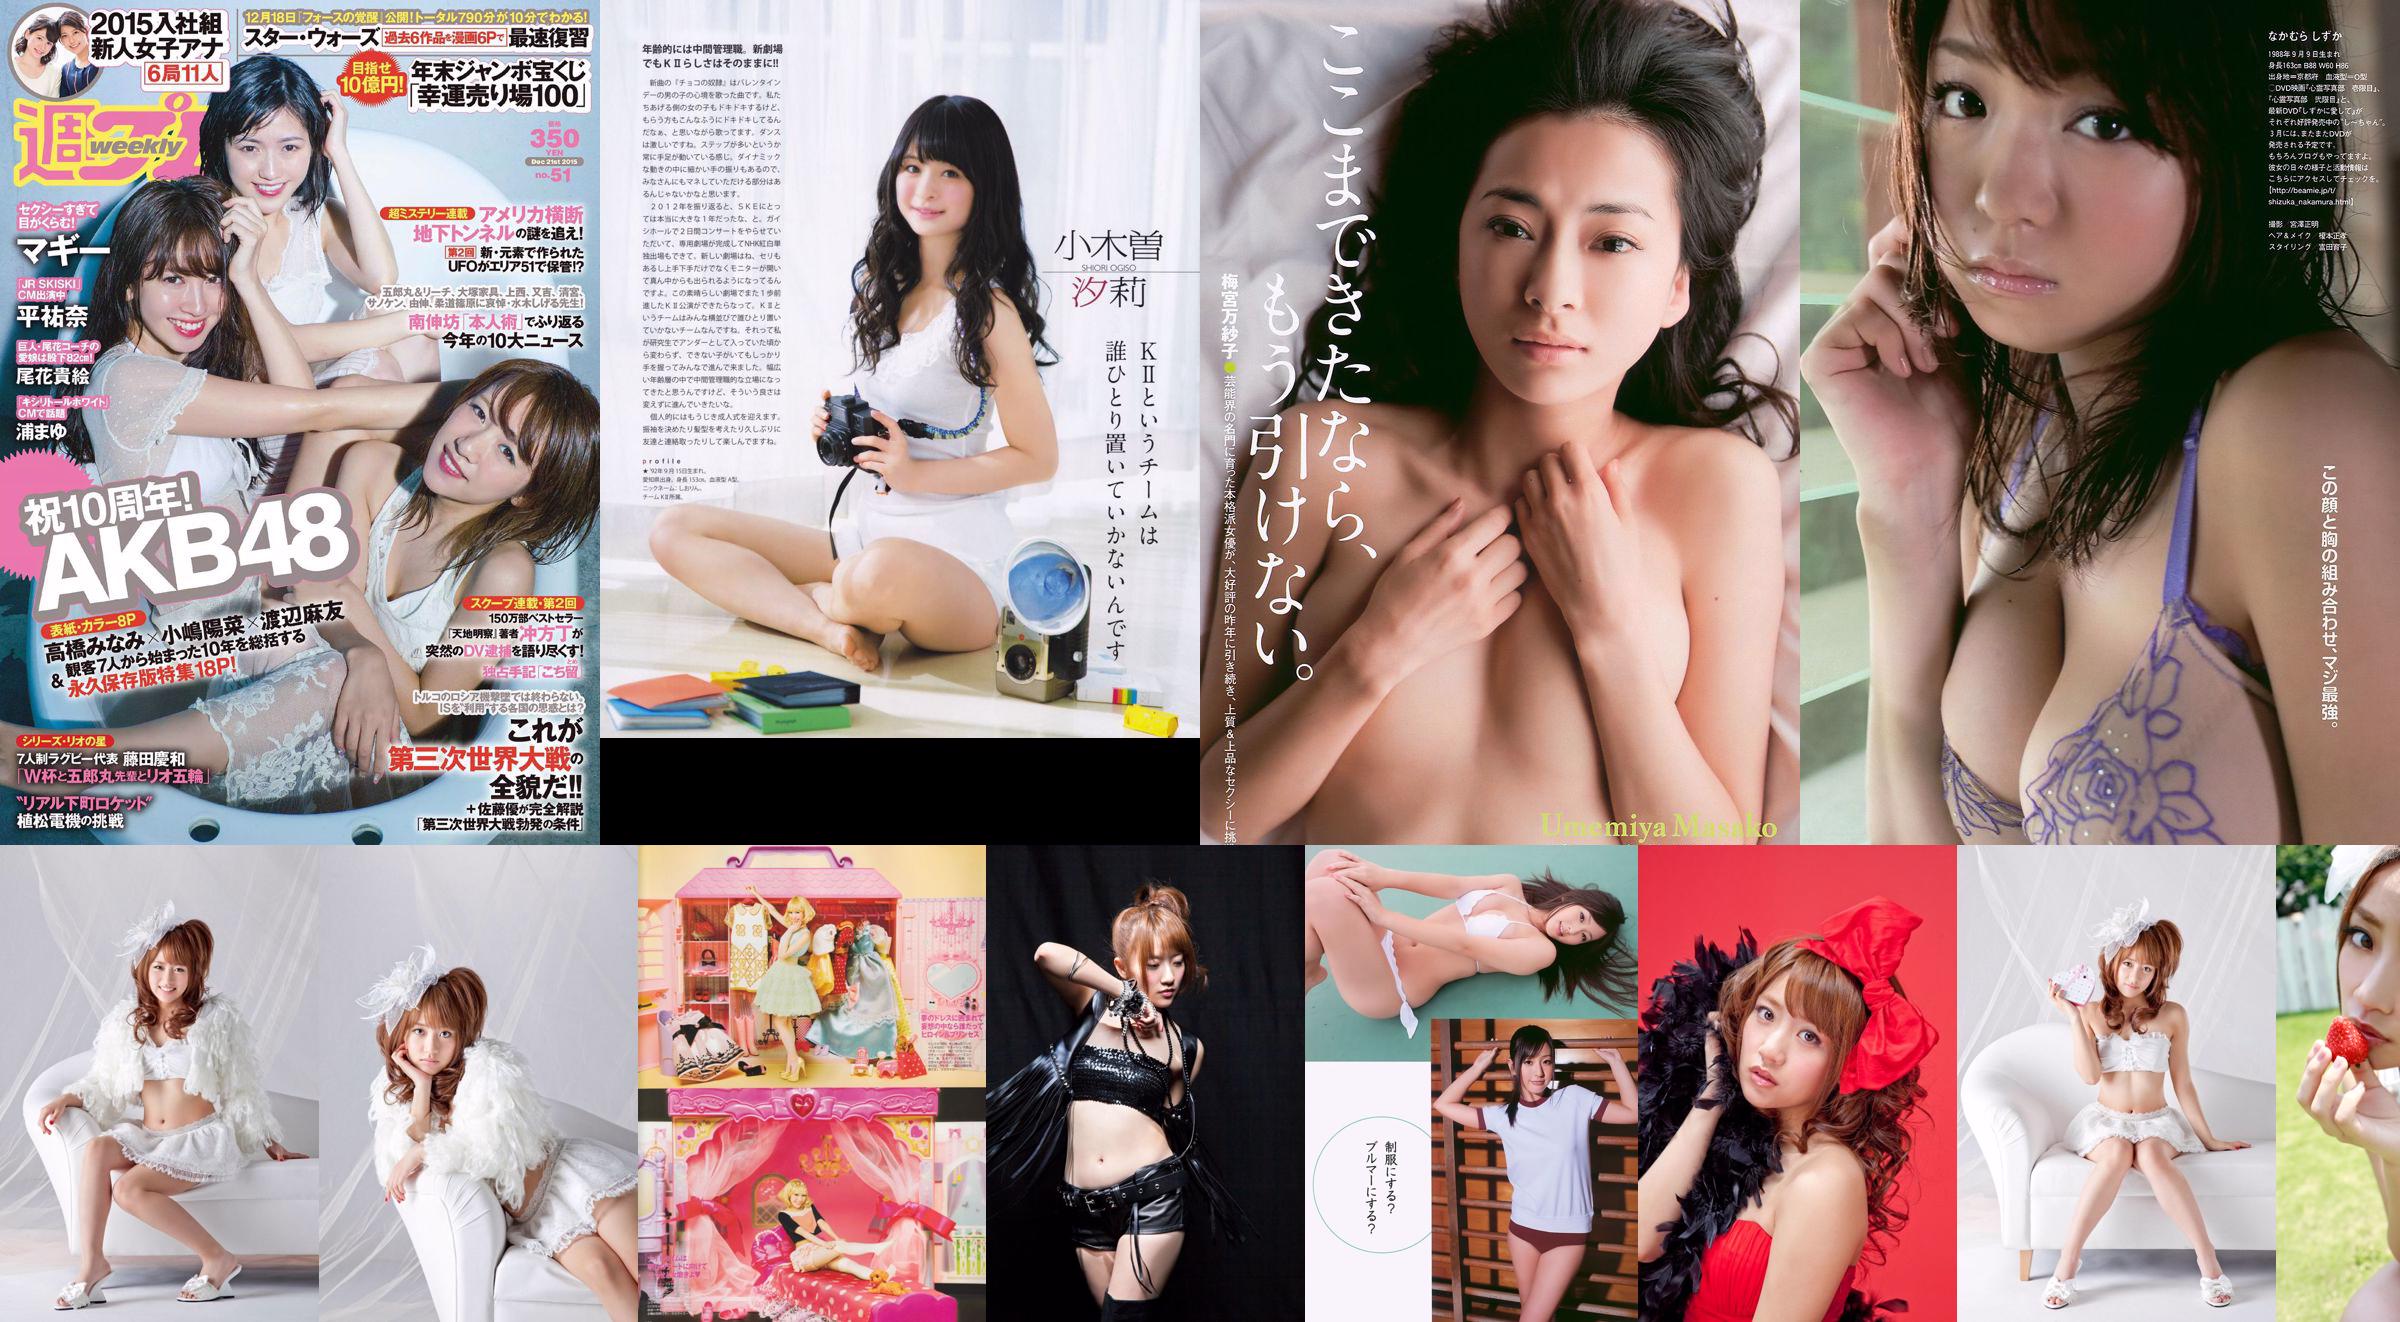 Minami Takahashi Haruna Kojima Mayu Watanabe Maggie Takae Obana Yuna Taira Mayu Ura Mitadera En [Weekly Playboy] 2015 No.51 Ảnh No.51176e Trang 1